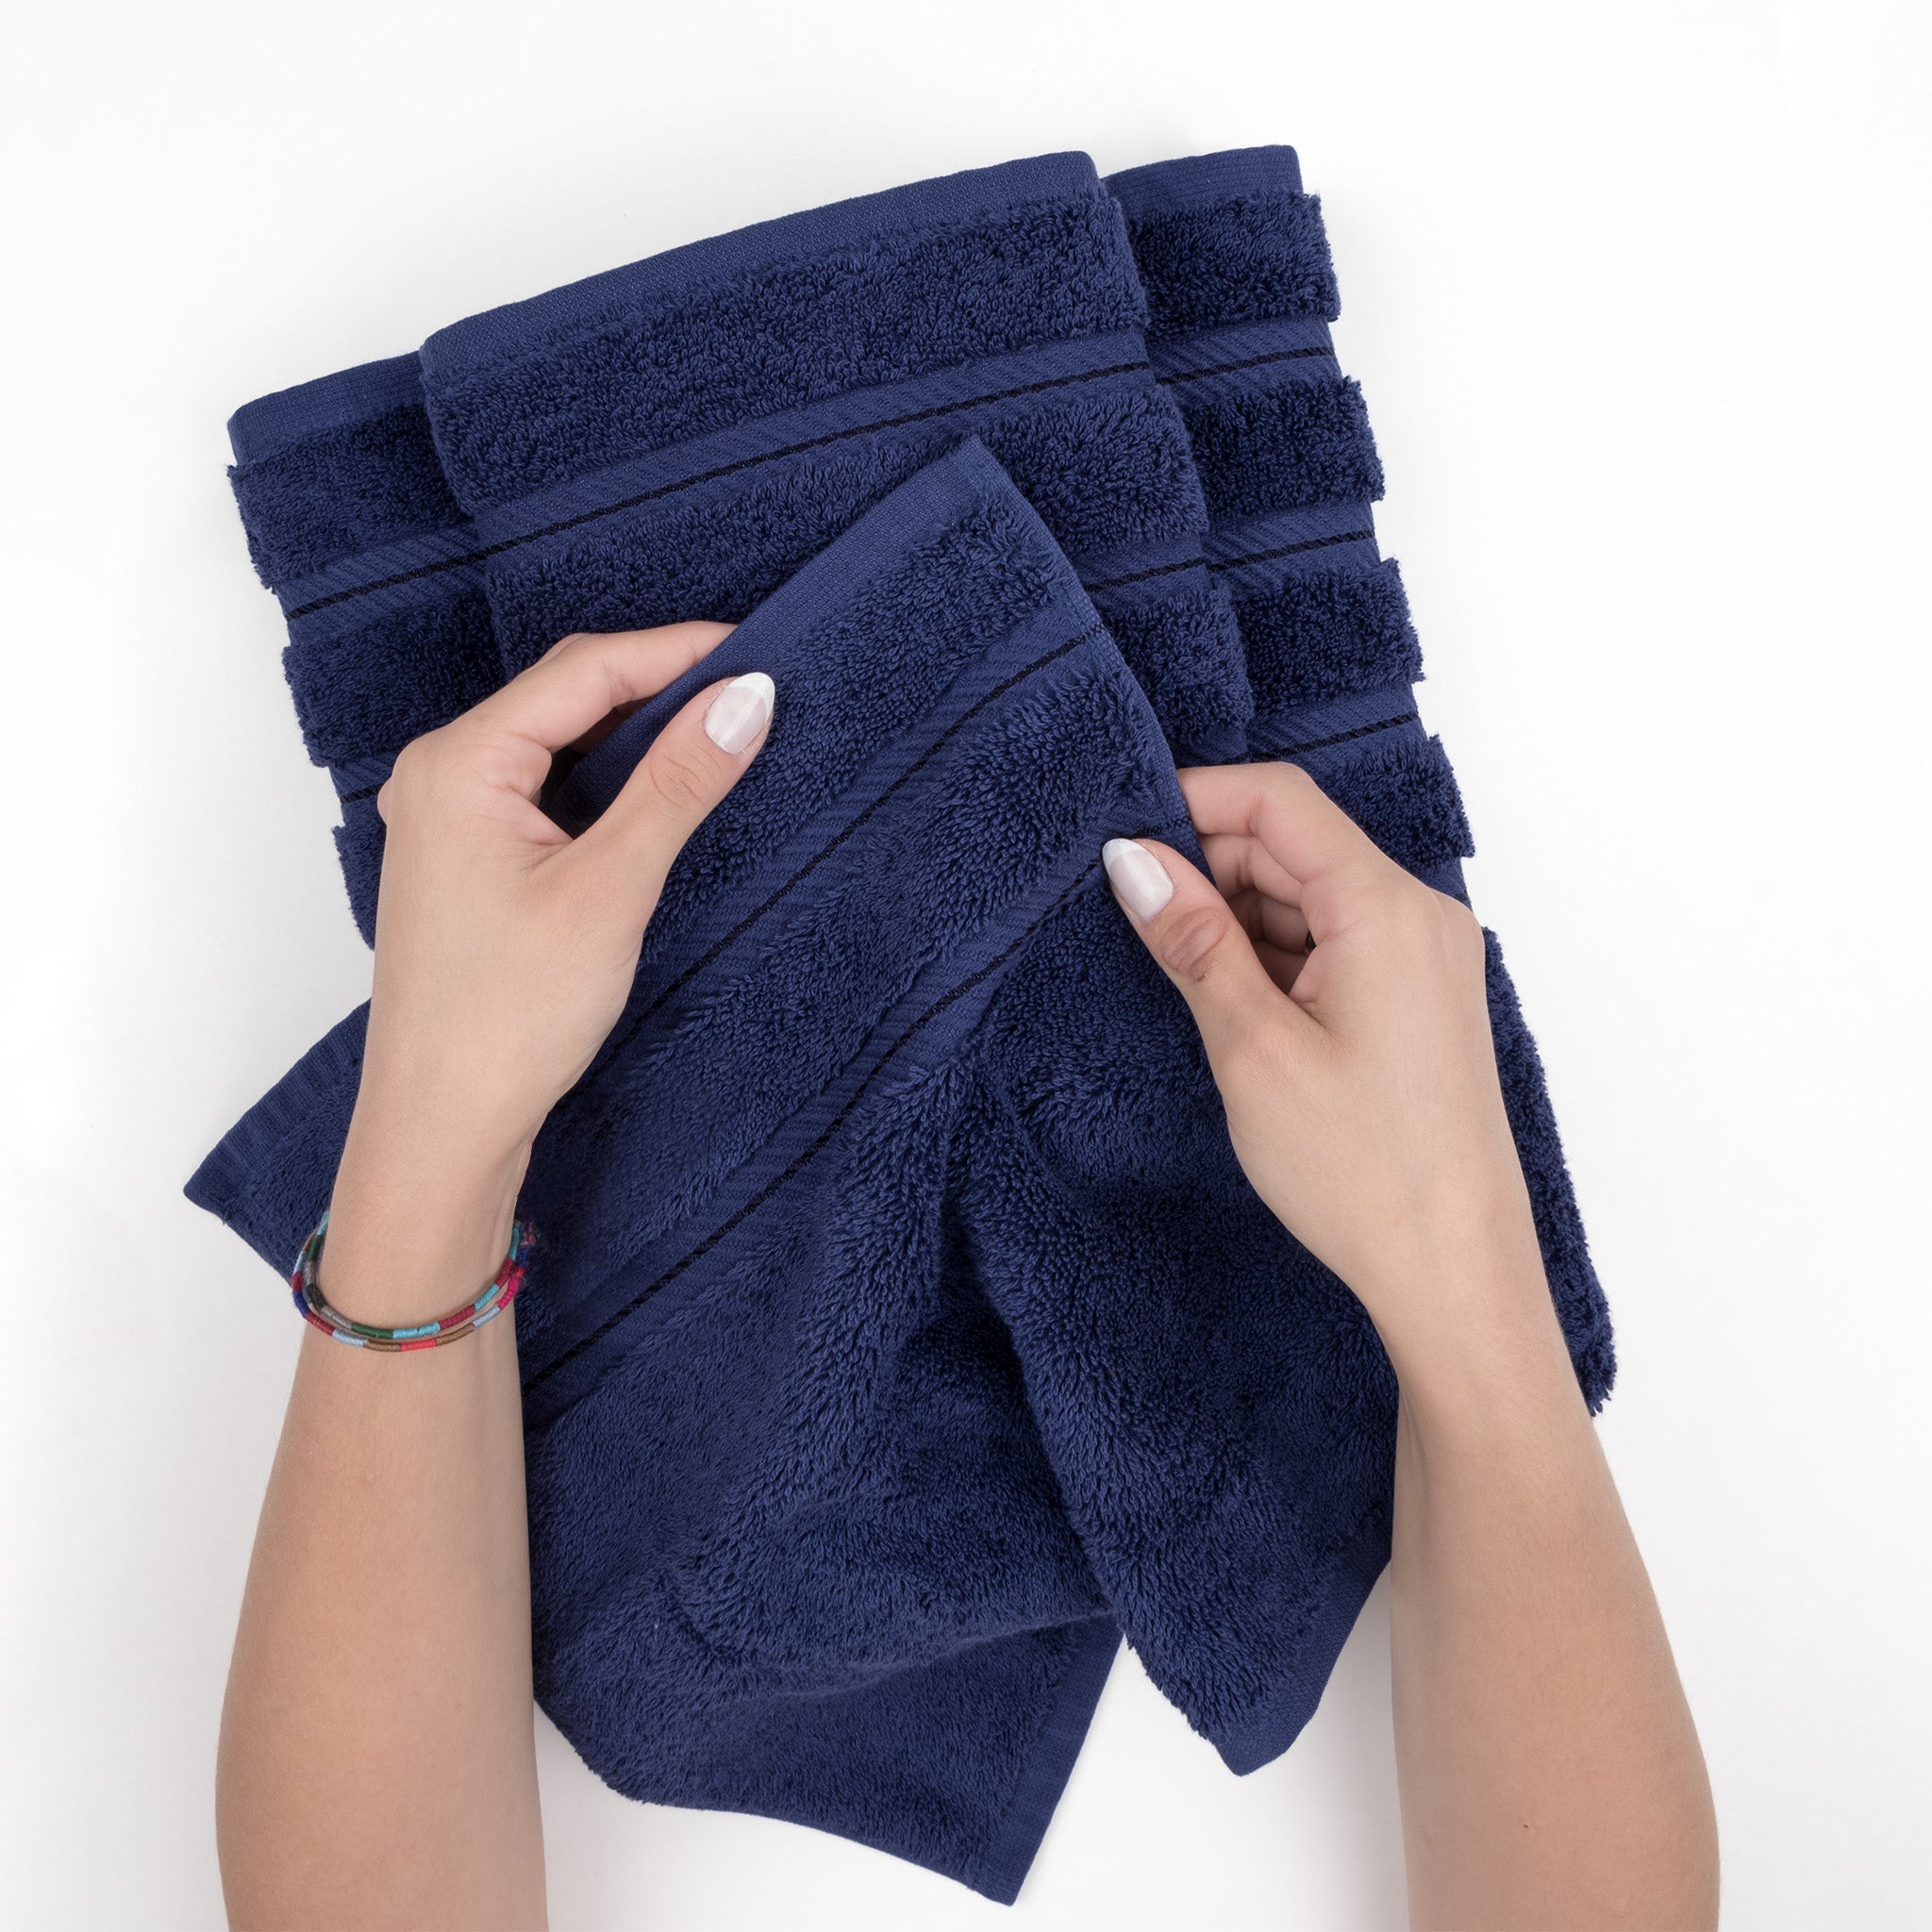 Extra Large Bath Towel Sheet Set 35x70 Inches - Oversized Bath Towels Set, Jumbo